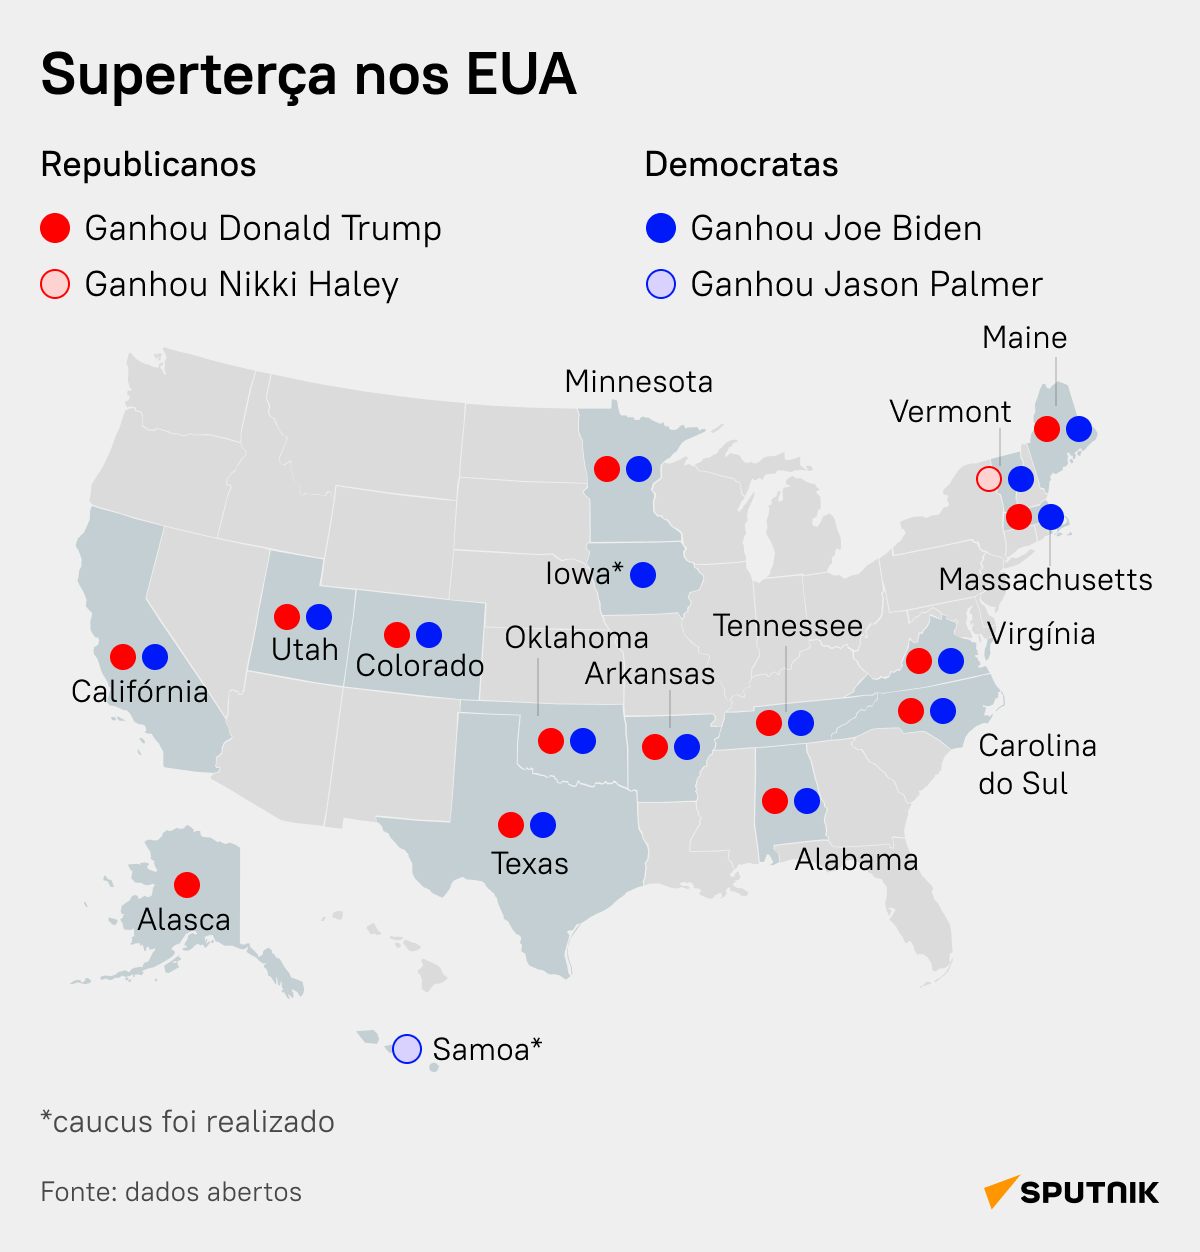 Superterça nos EUA: quem lidera a corrida presidencial? - Sputnik Brasil